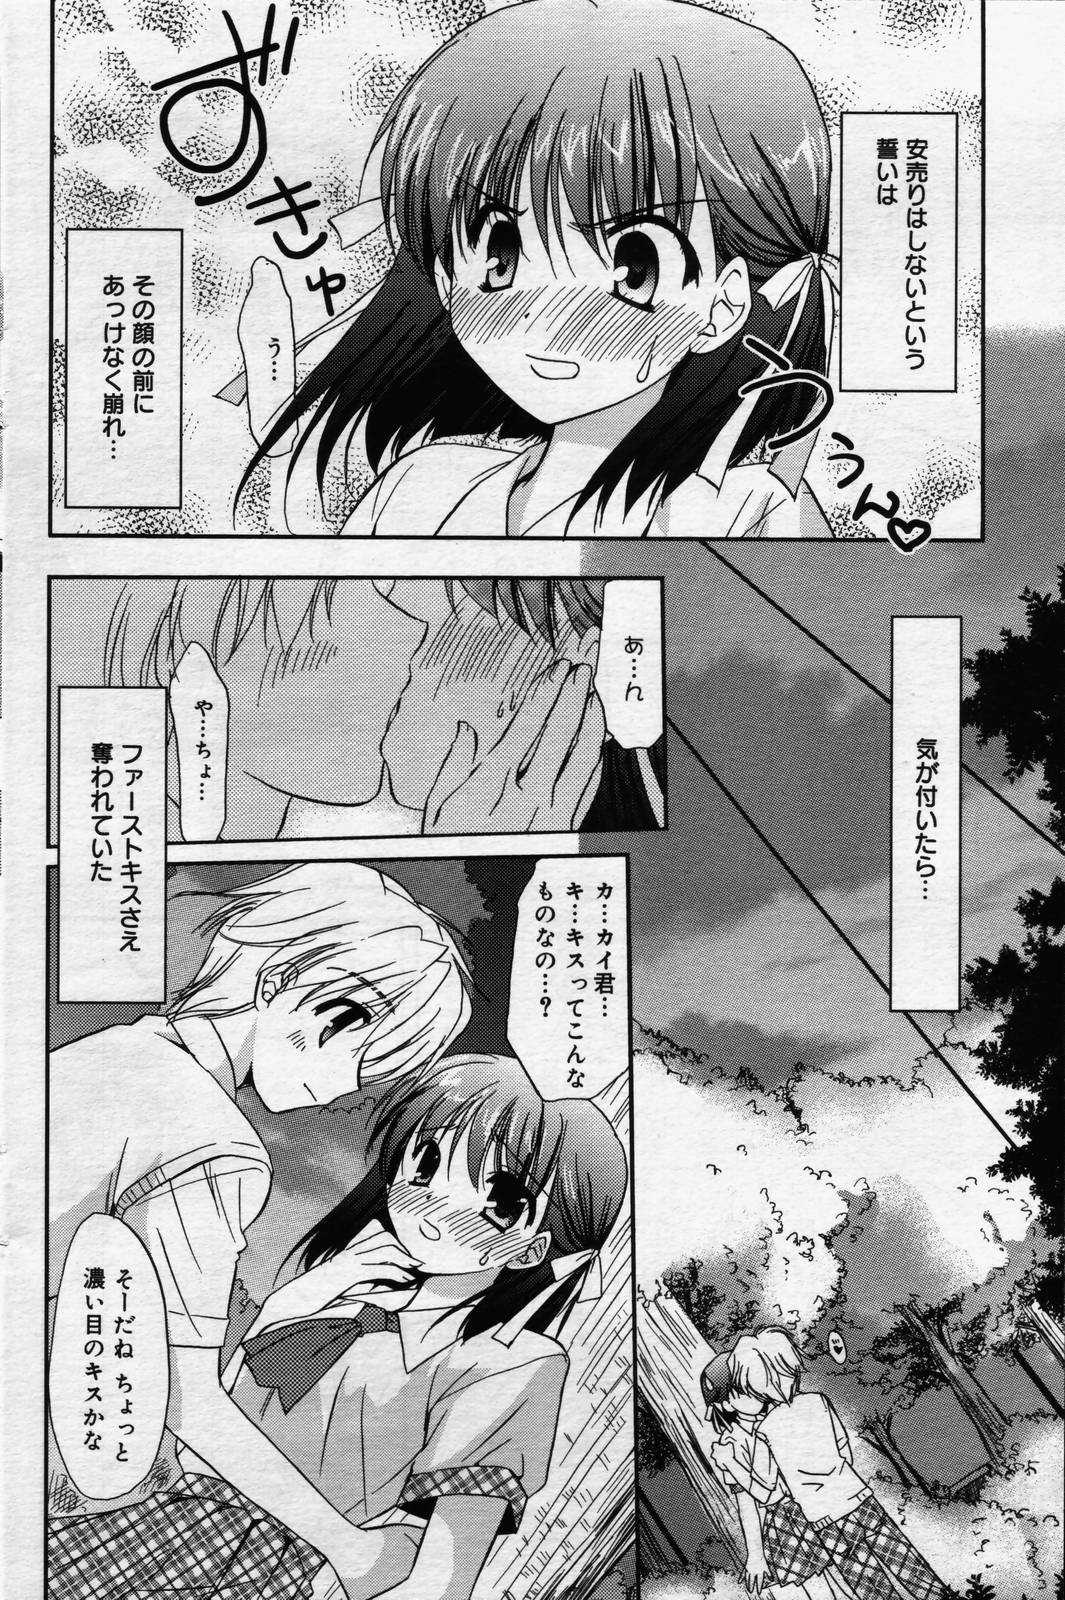 manga bangaichi 2006-07 漫画ばんがいち 2006年07月号